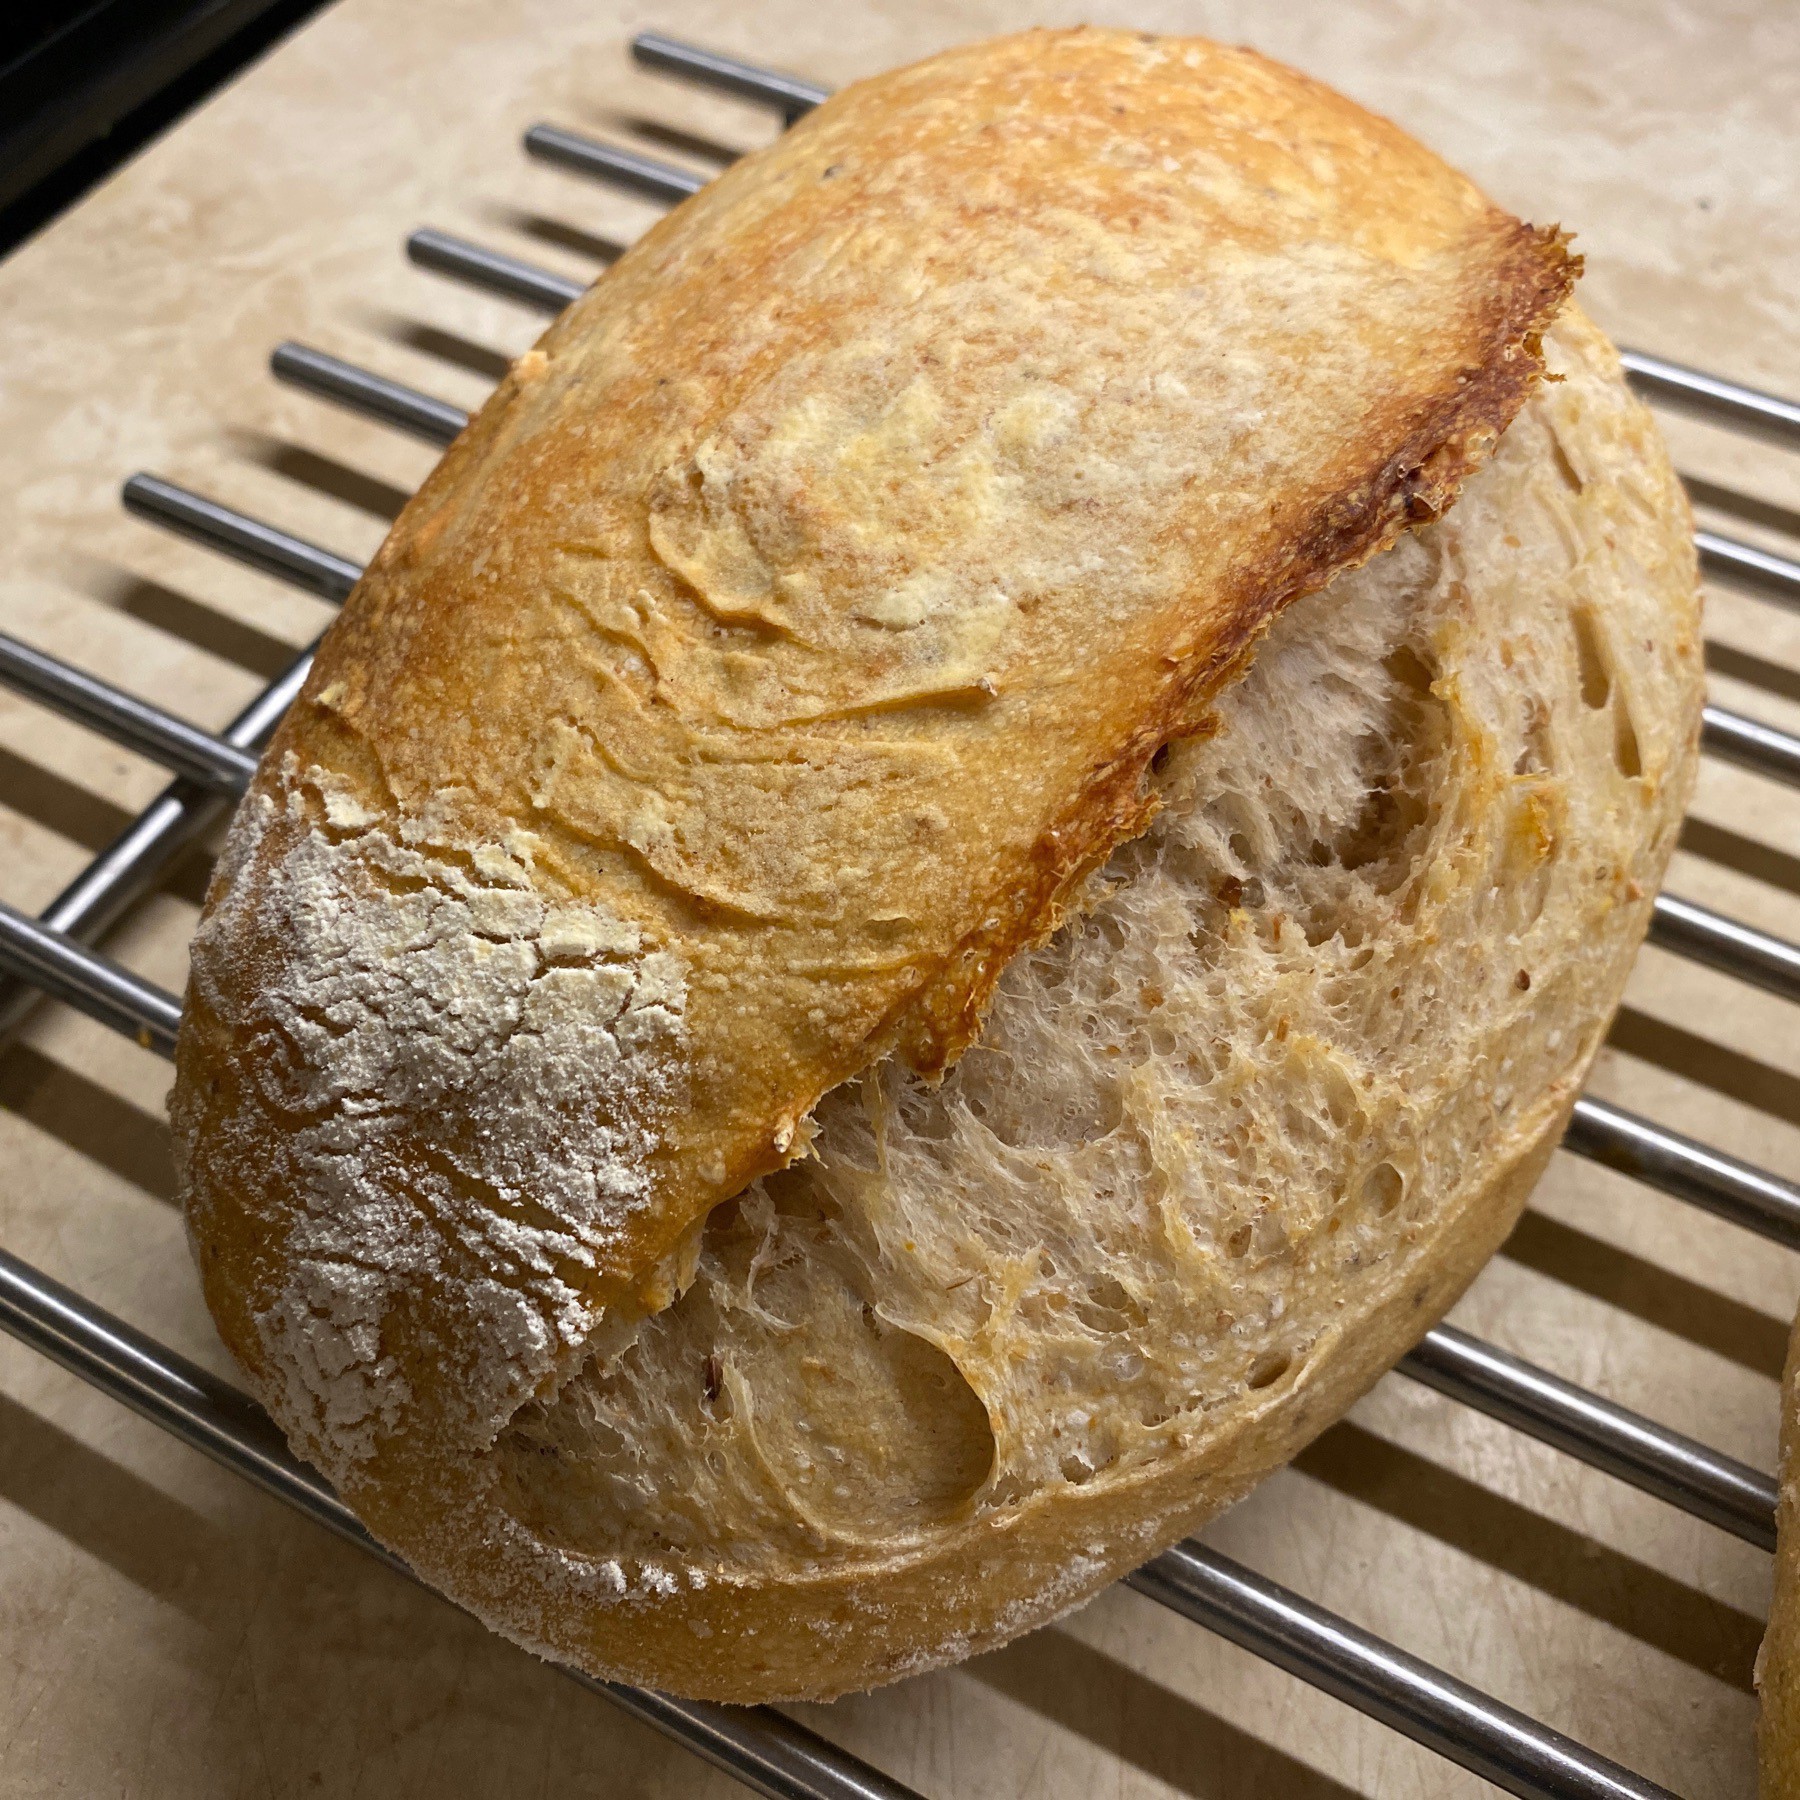 Sourdough bread loaf cooling on metal rack.